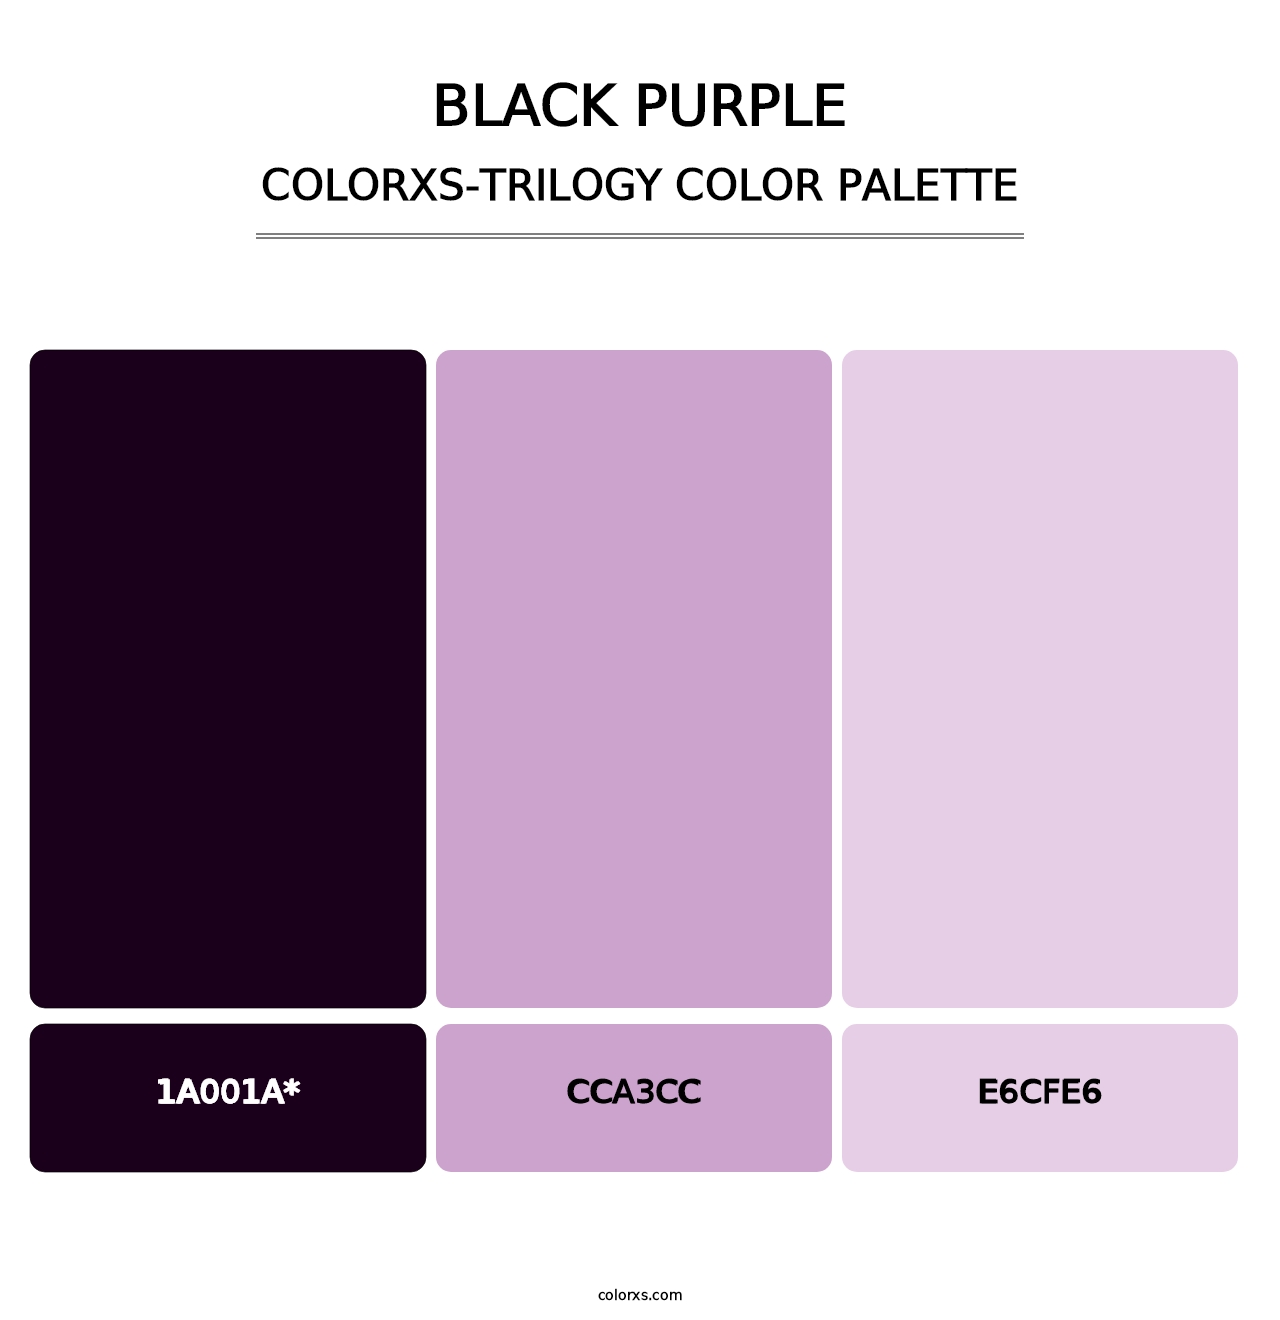 Black Purple - Colorxs Trilogy Palette